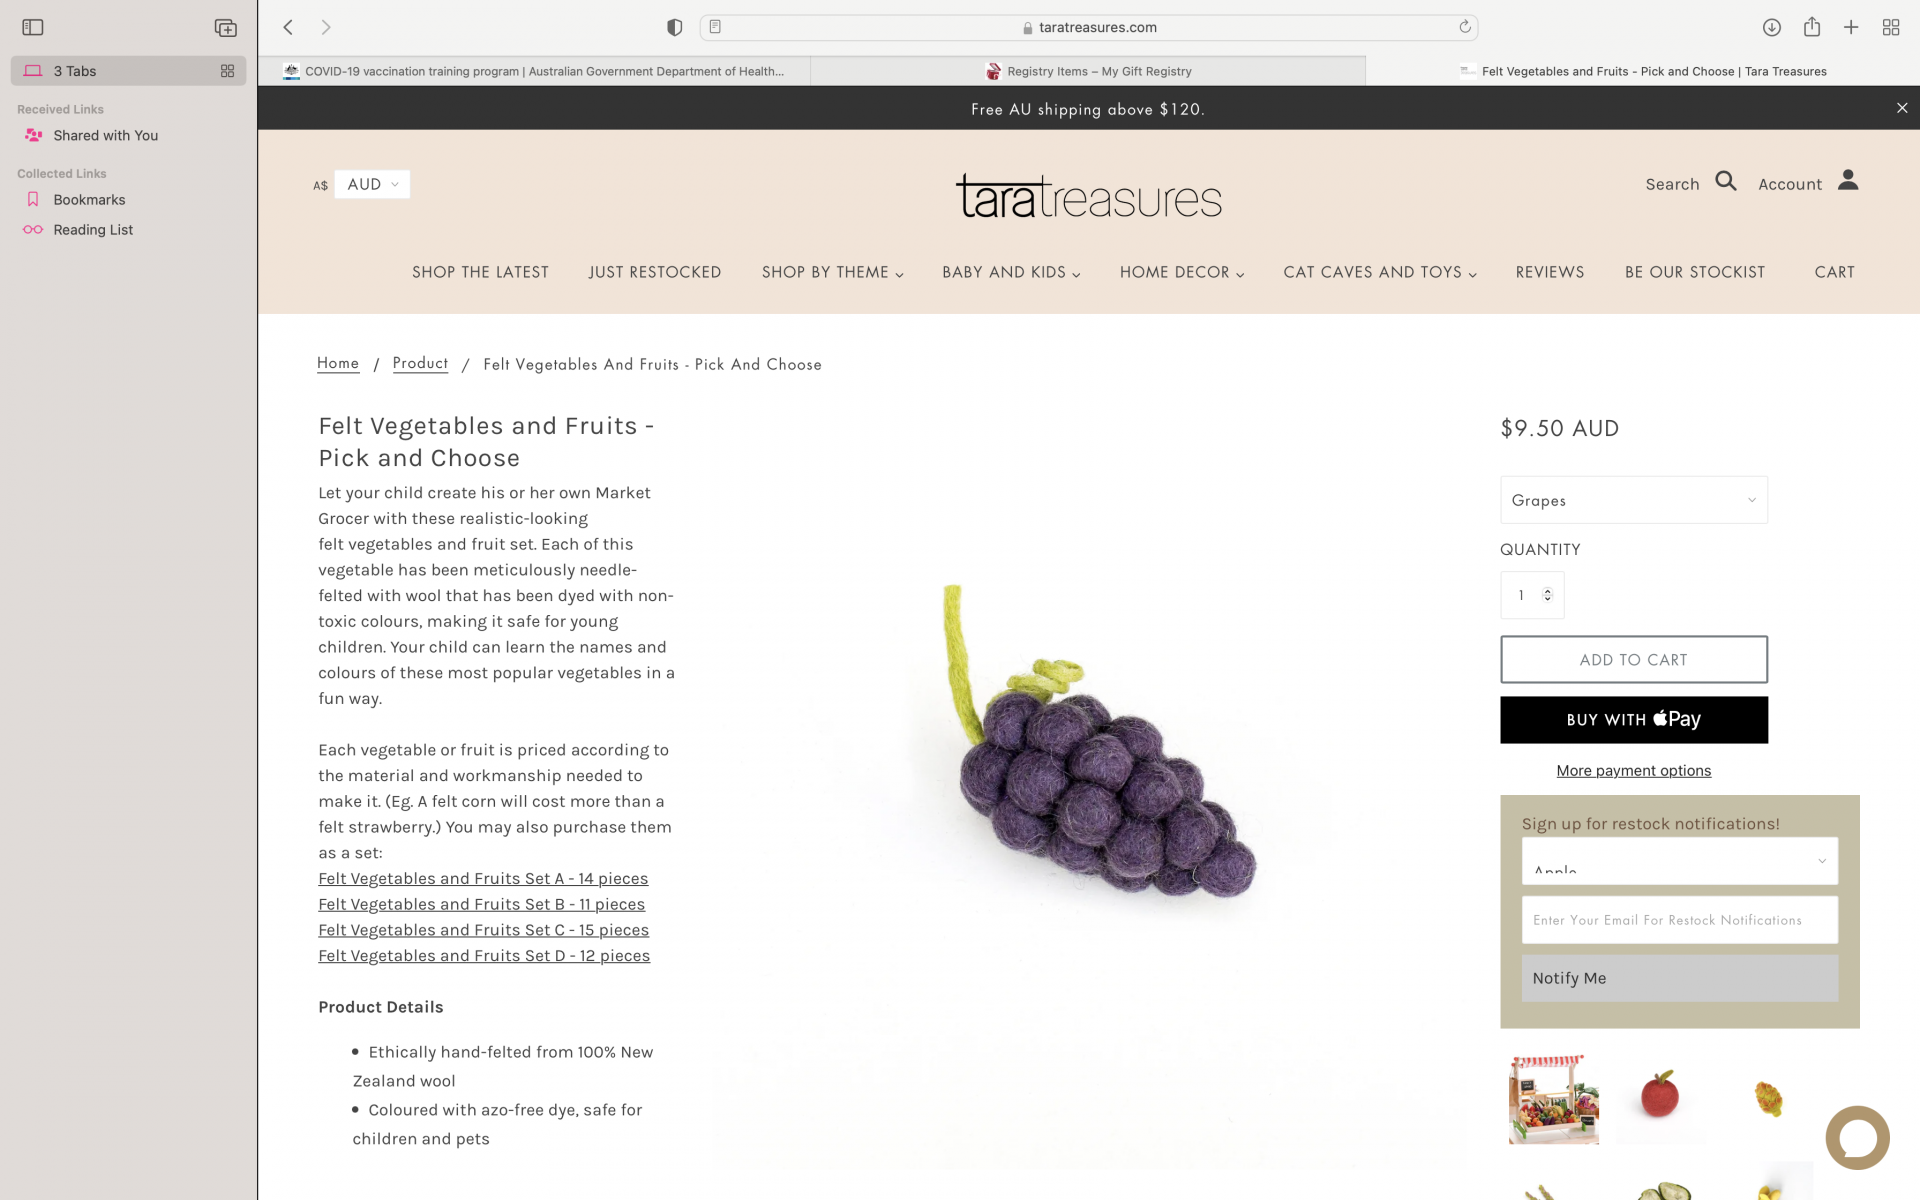 Felt grapes